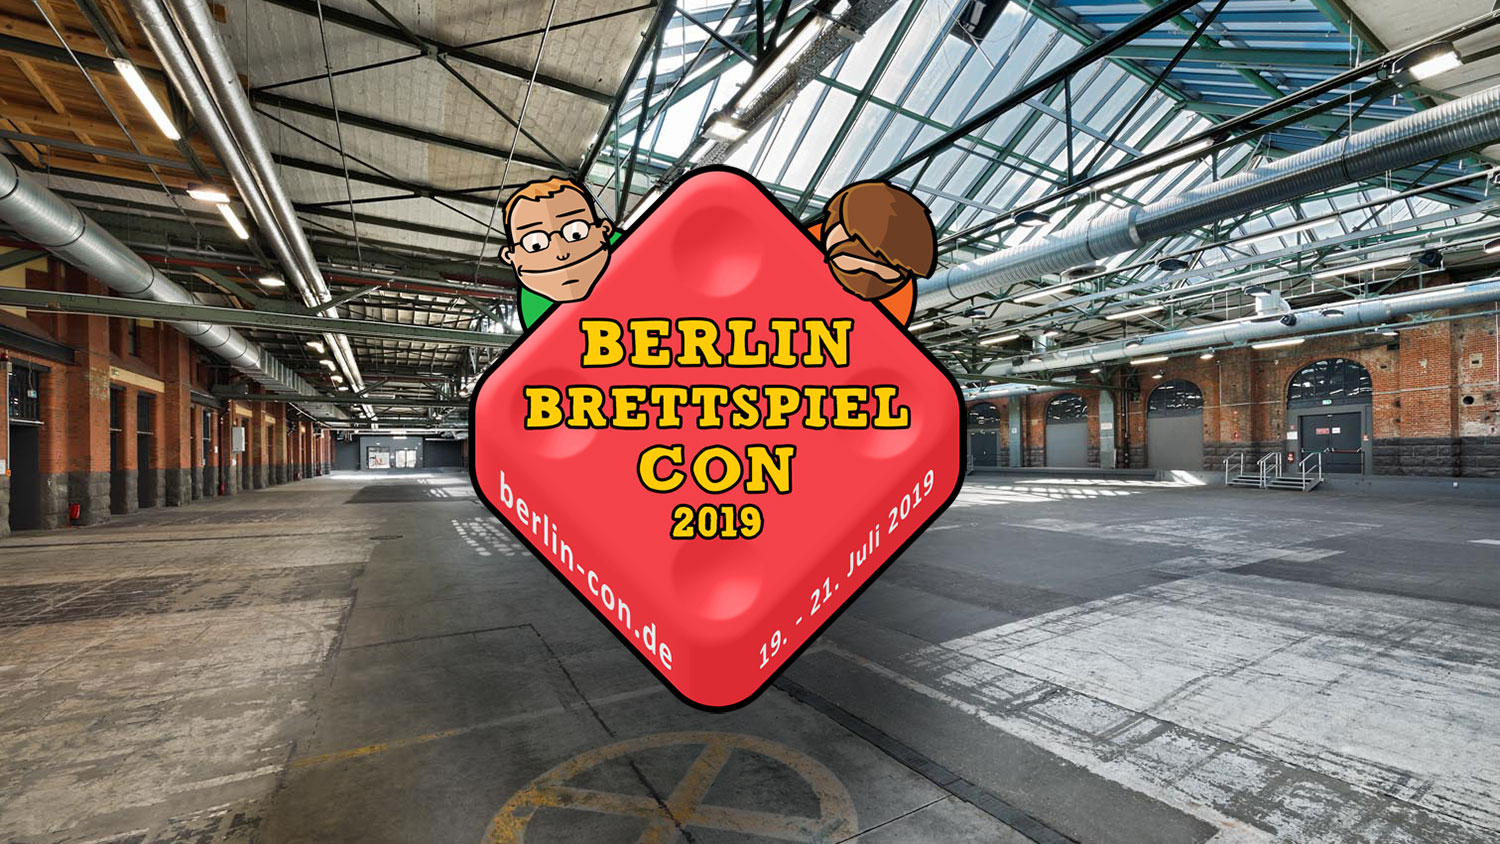 Berlin-Brettspiel Con findet vom 19.07. bis zum 21.07.2019 statt